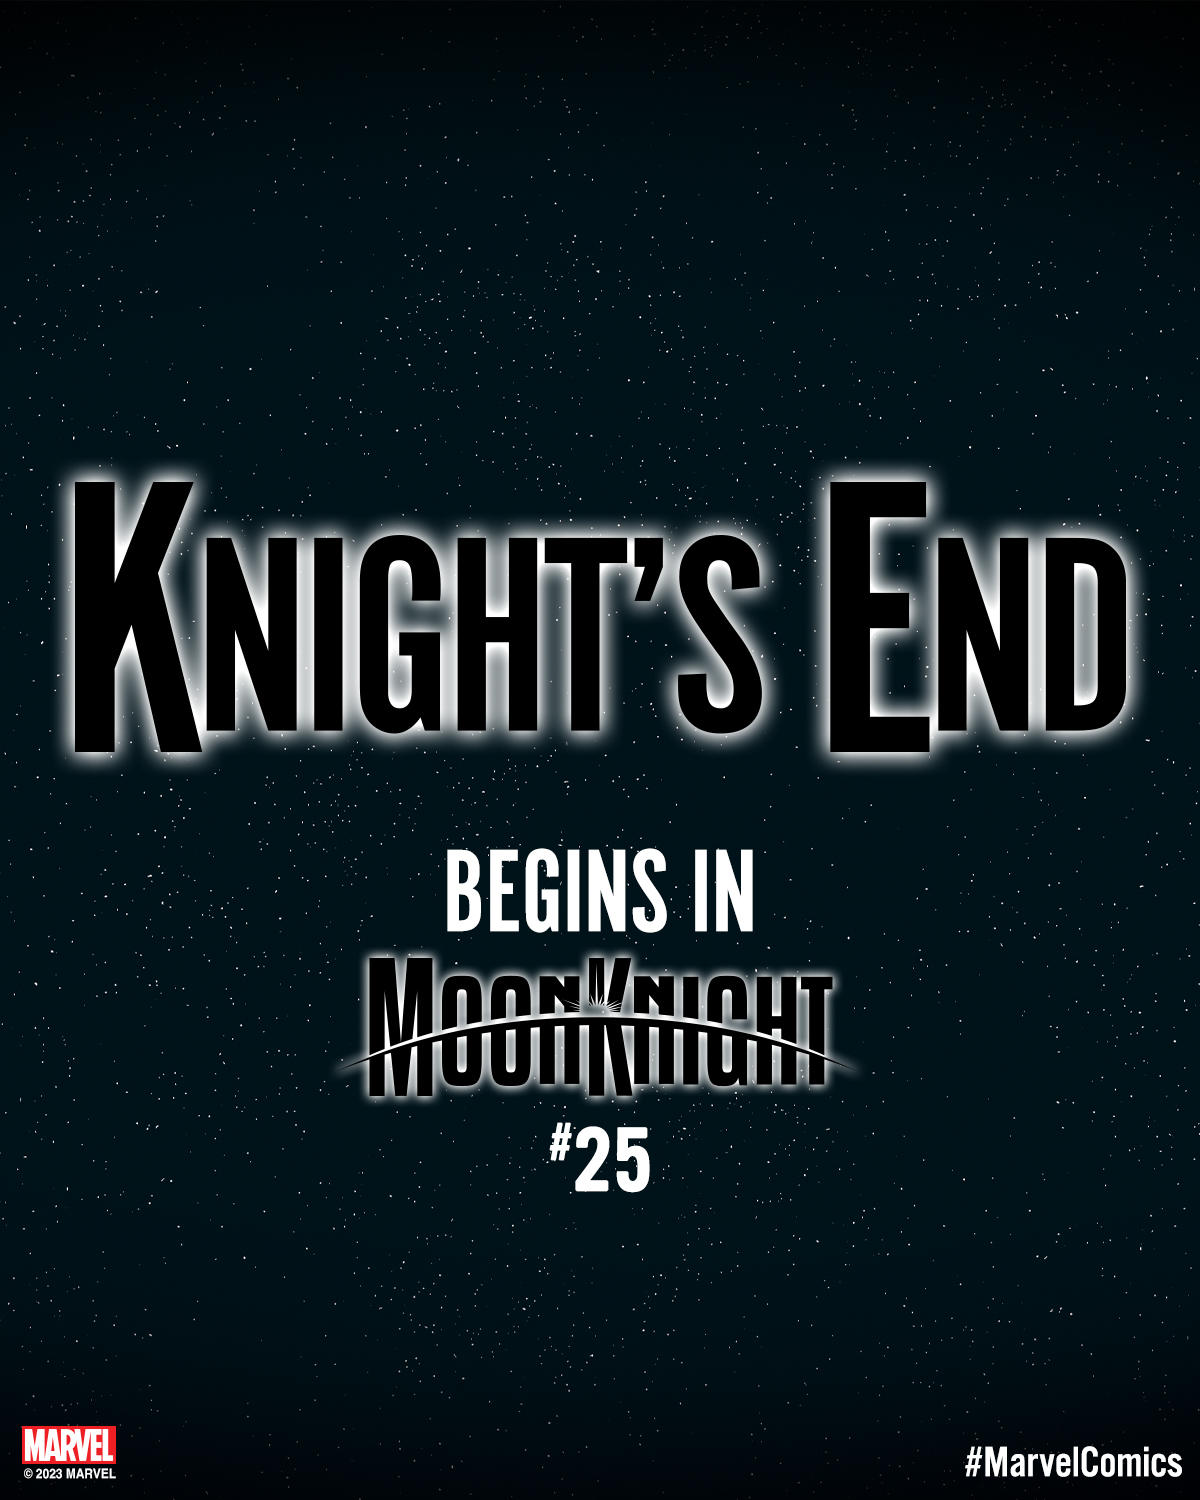 Moon Knight Concept  Marvel moon knight, Moon knight, Marvel knights